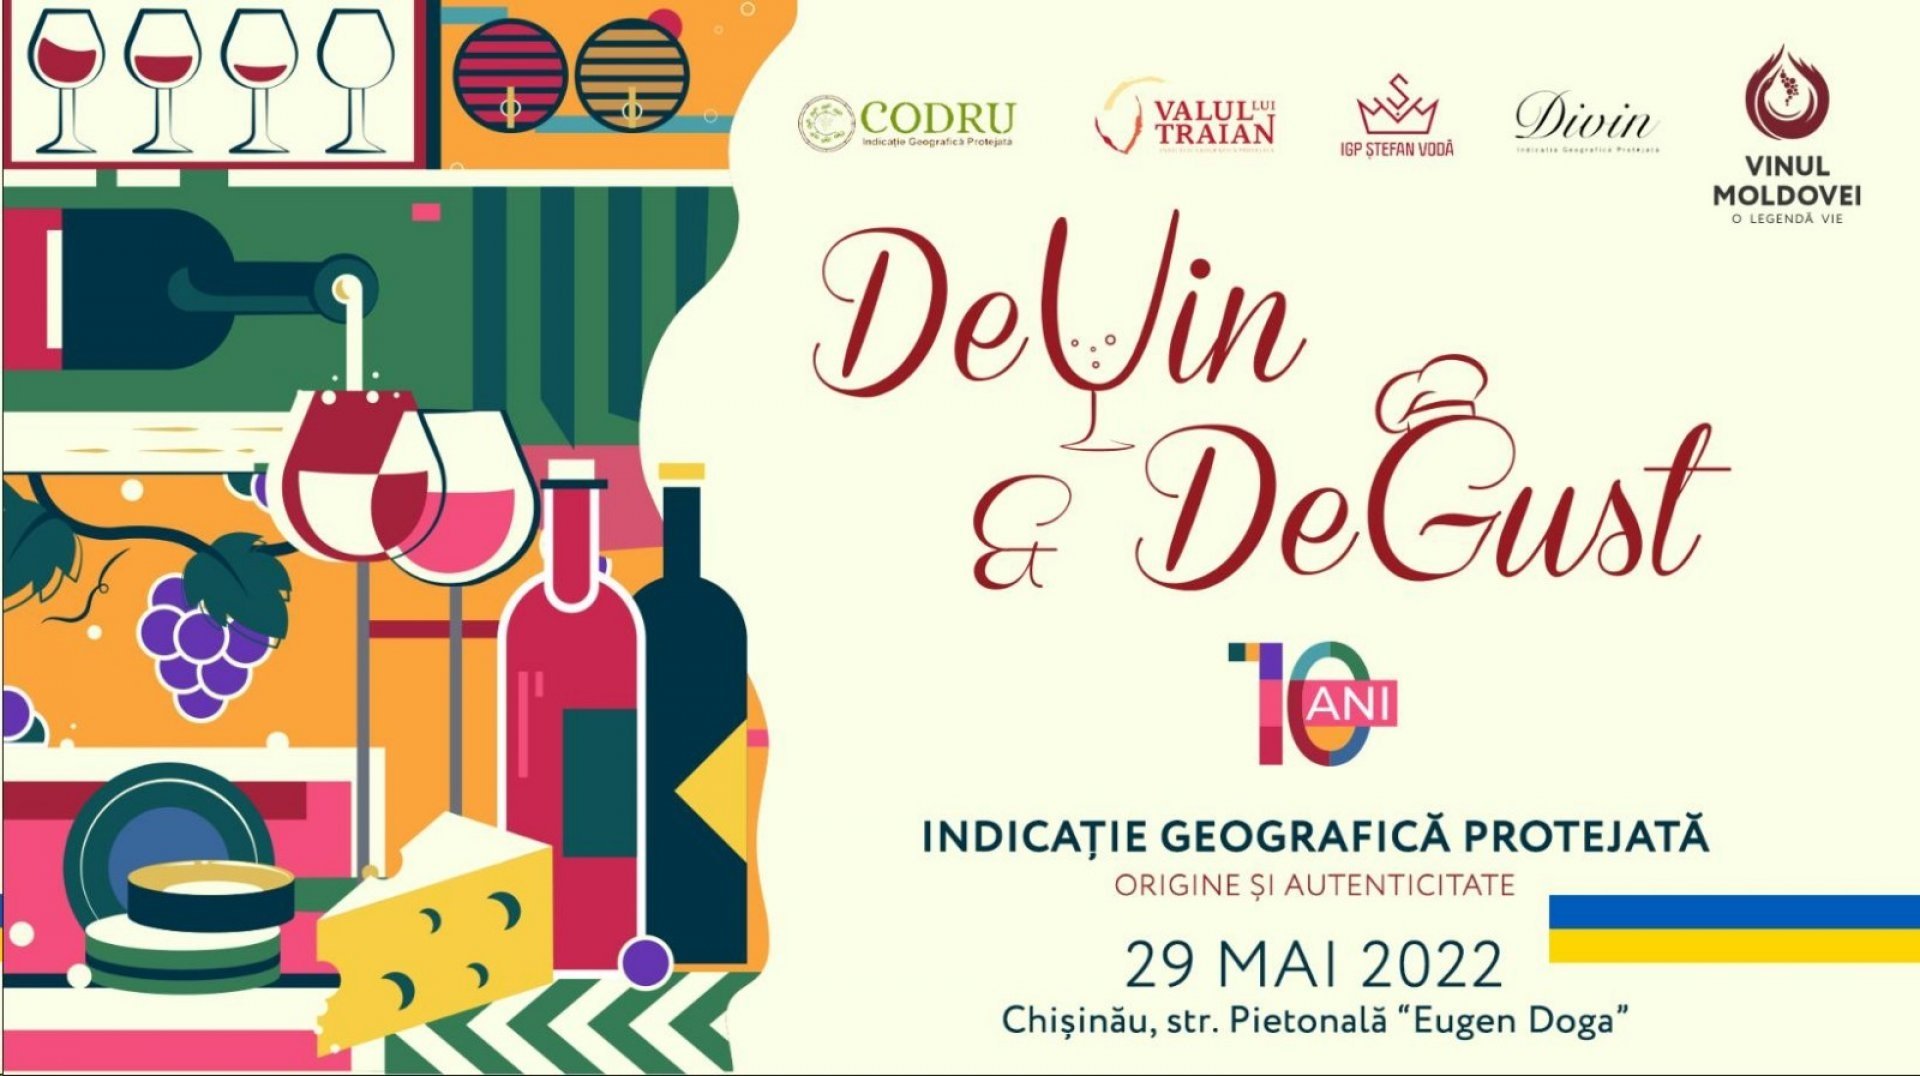 Festivalul „DeVin&DeGust” 2022